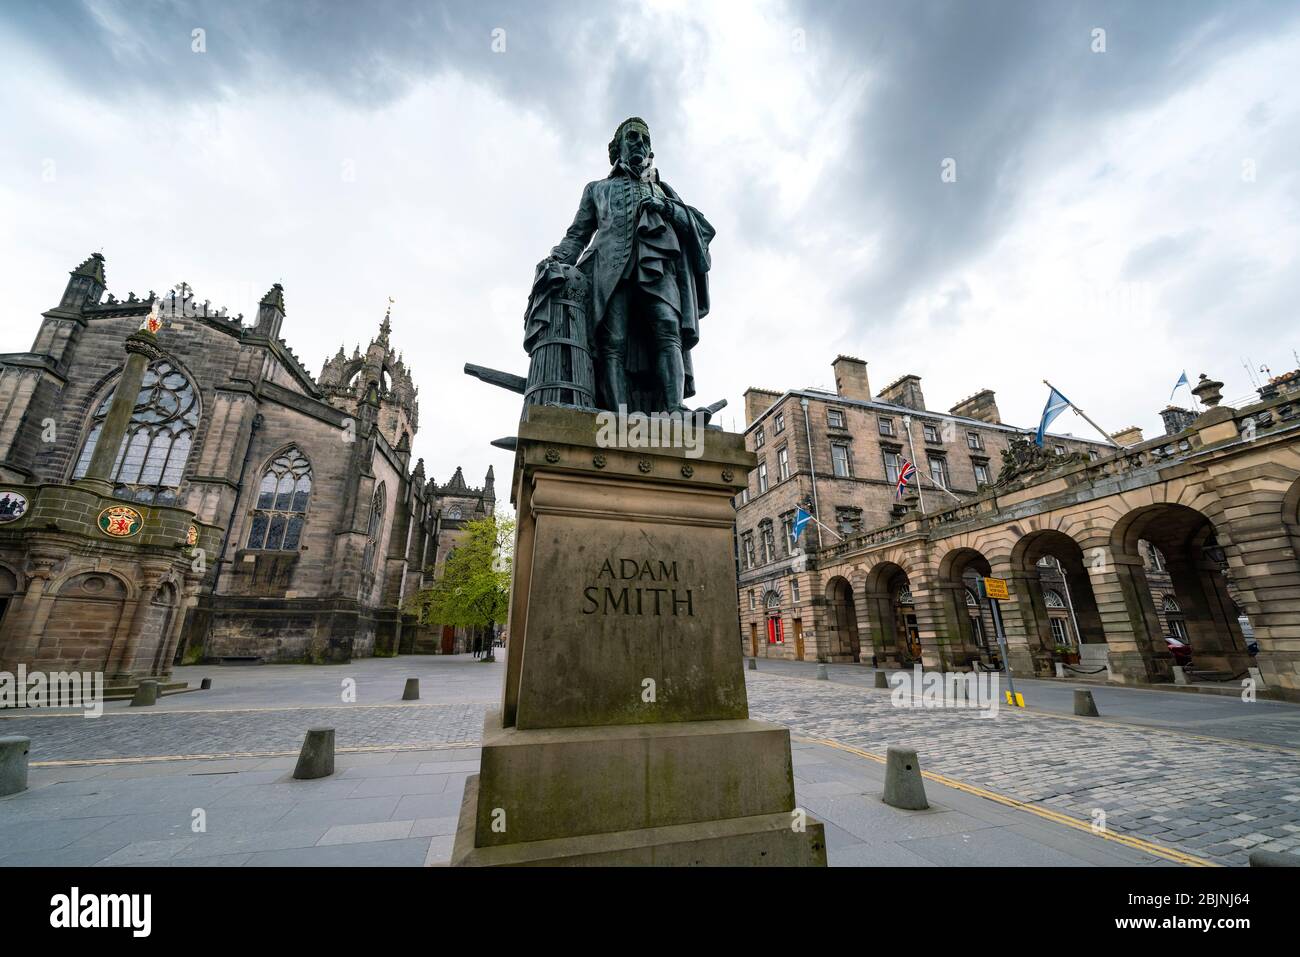 Vue sur la statue d'Adam Smith sur le Royal Mile lors du verrouillage de la covid-19 dans la vieille ville d'Édimbourg, en Écosse, au Royaume-Uni Banque D'Images